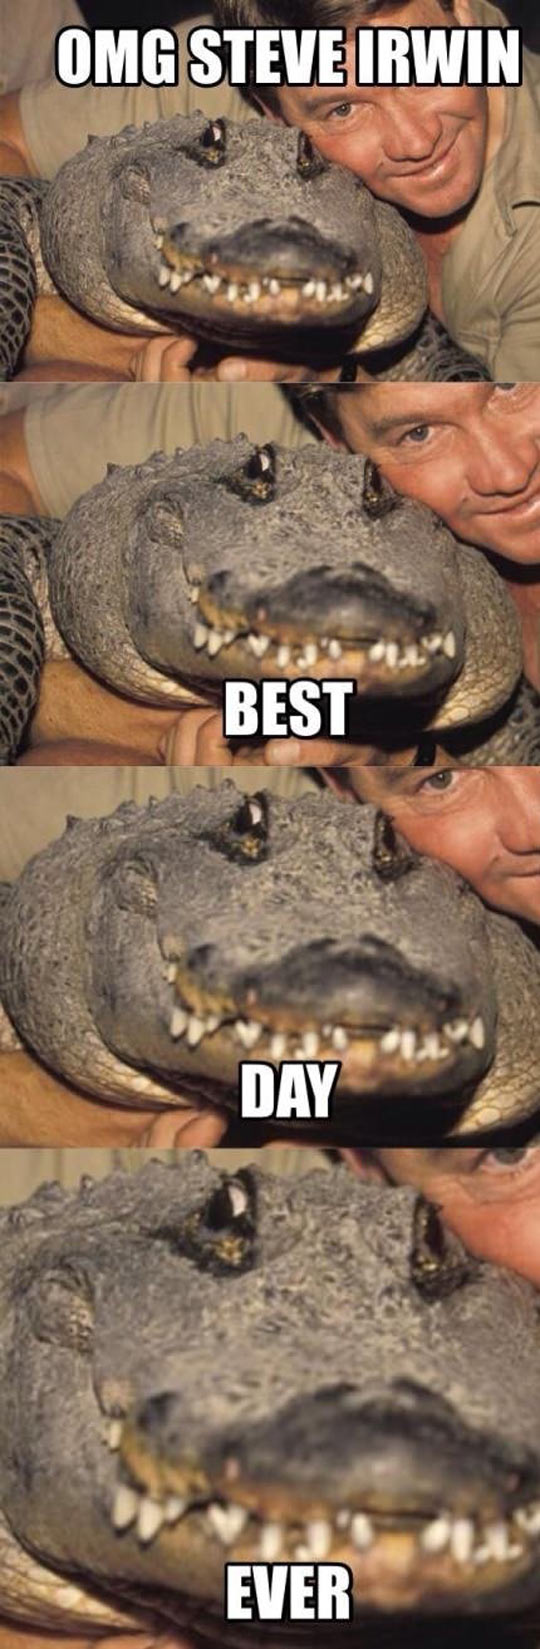 funny-picture-alligator-Steve-Irwin-fan